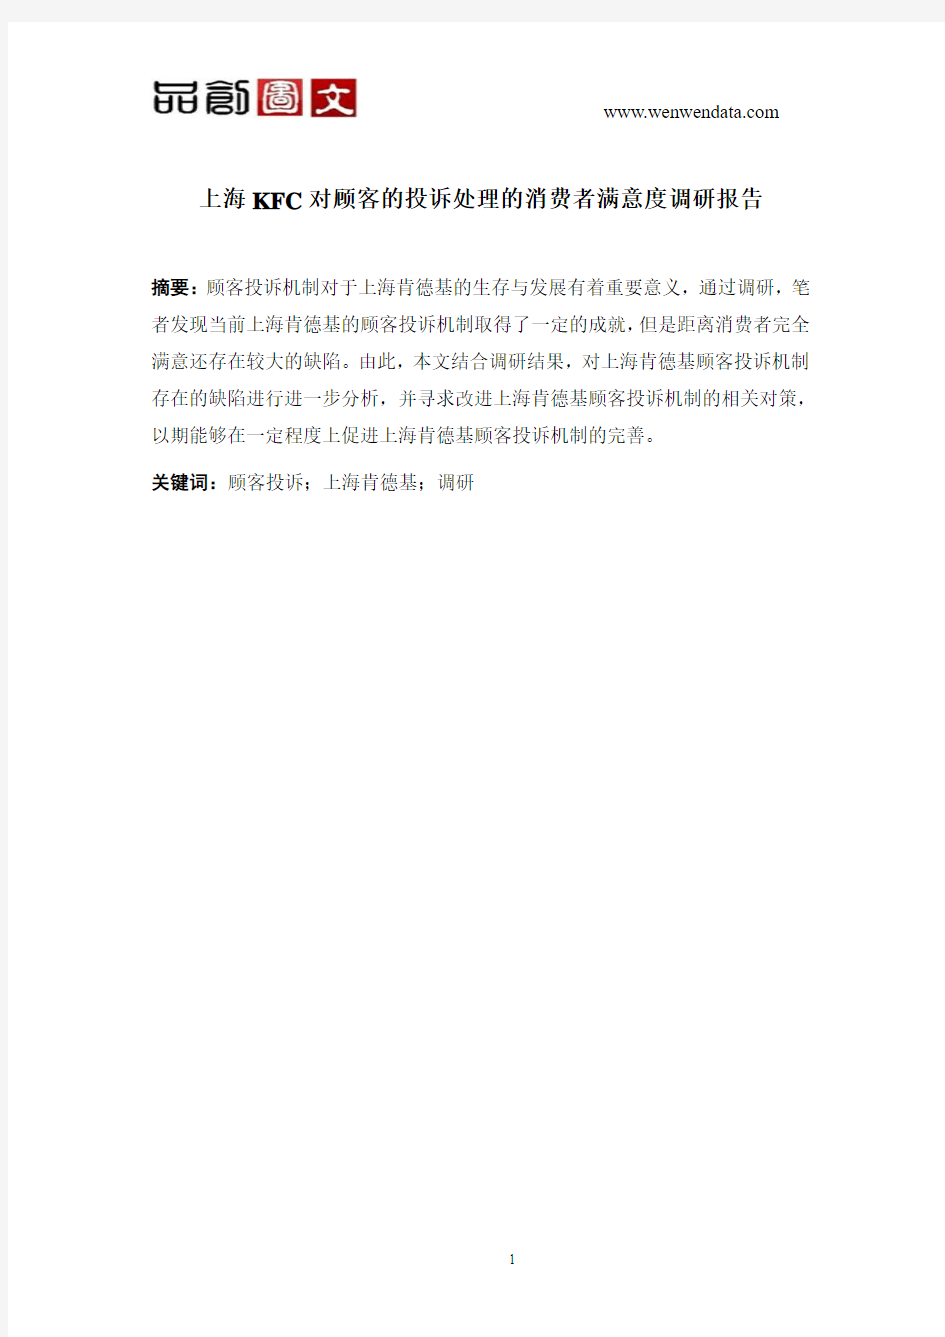 上海KFC对顾客的投诉处理的消费者满意度调研报告-毕业论文